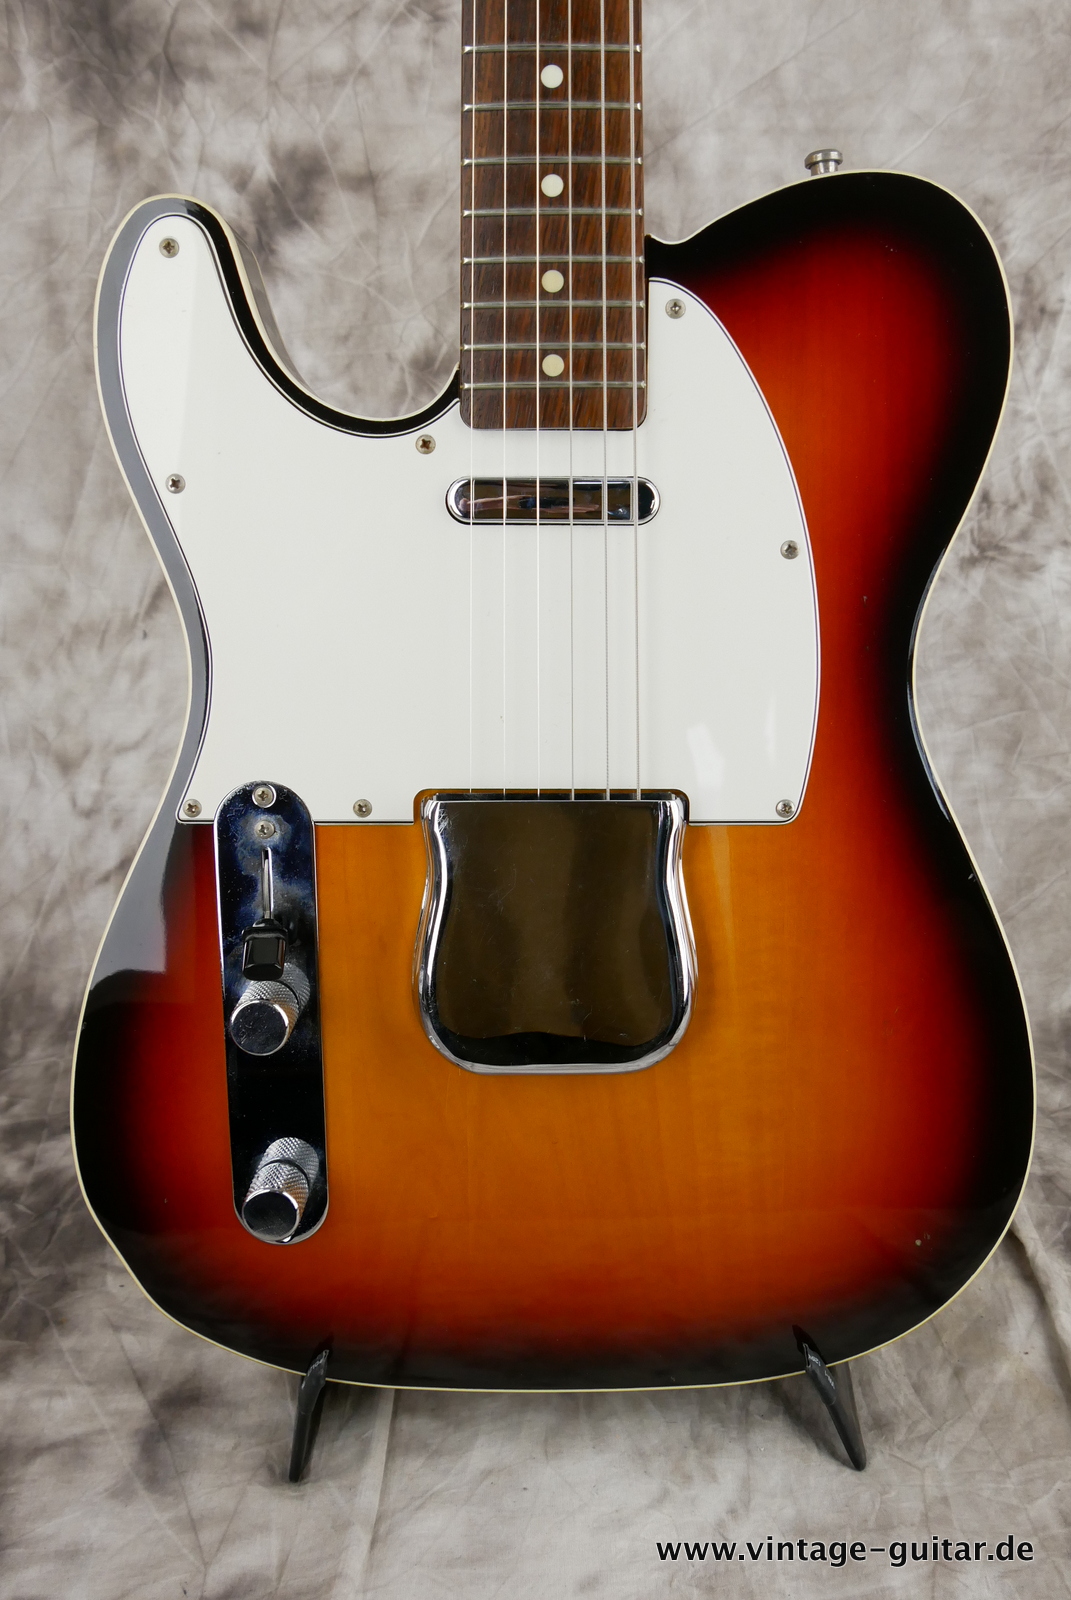 Fender-Telecaster-Custom-MIJ-62-reissue-1985-sunburst-007.JPG